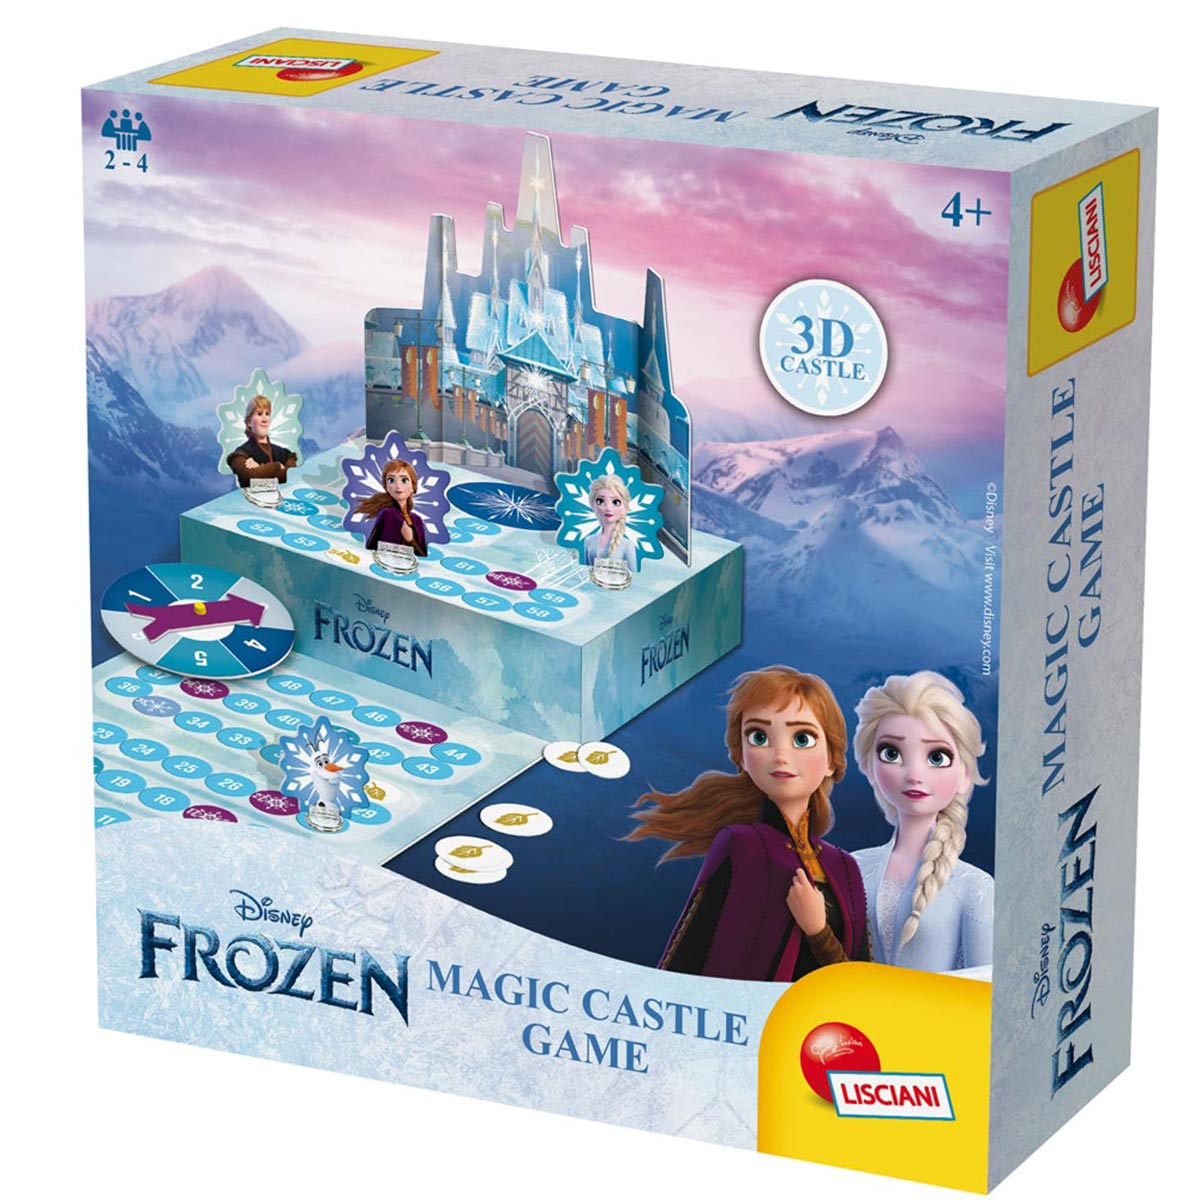 DISNEY FROZEN Magic Castle Spiel Die Lernspiele, Lisciani 3D, Eiskönigin mehrfarbig